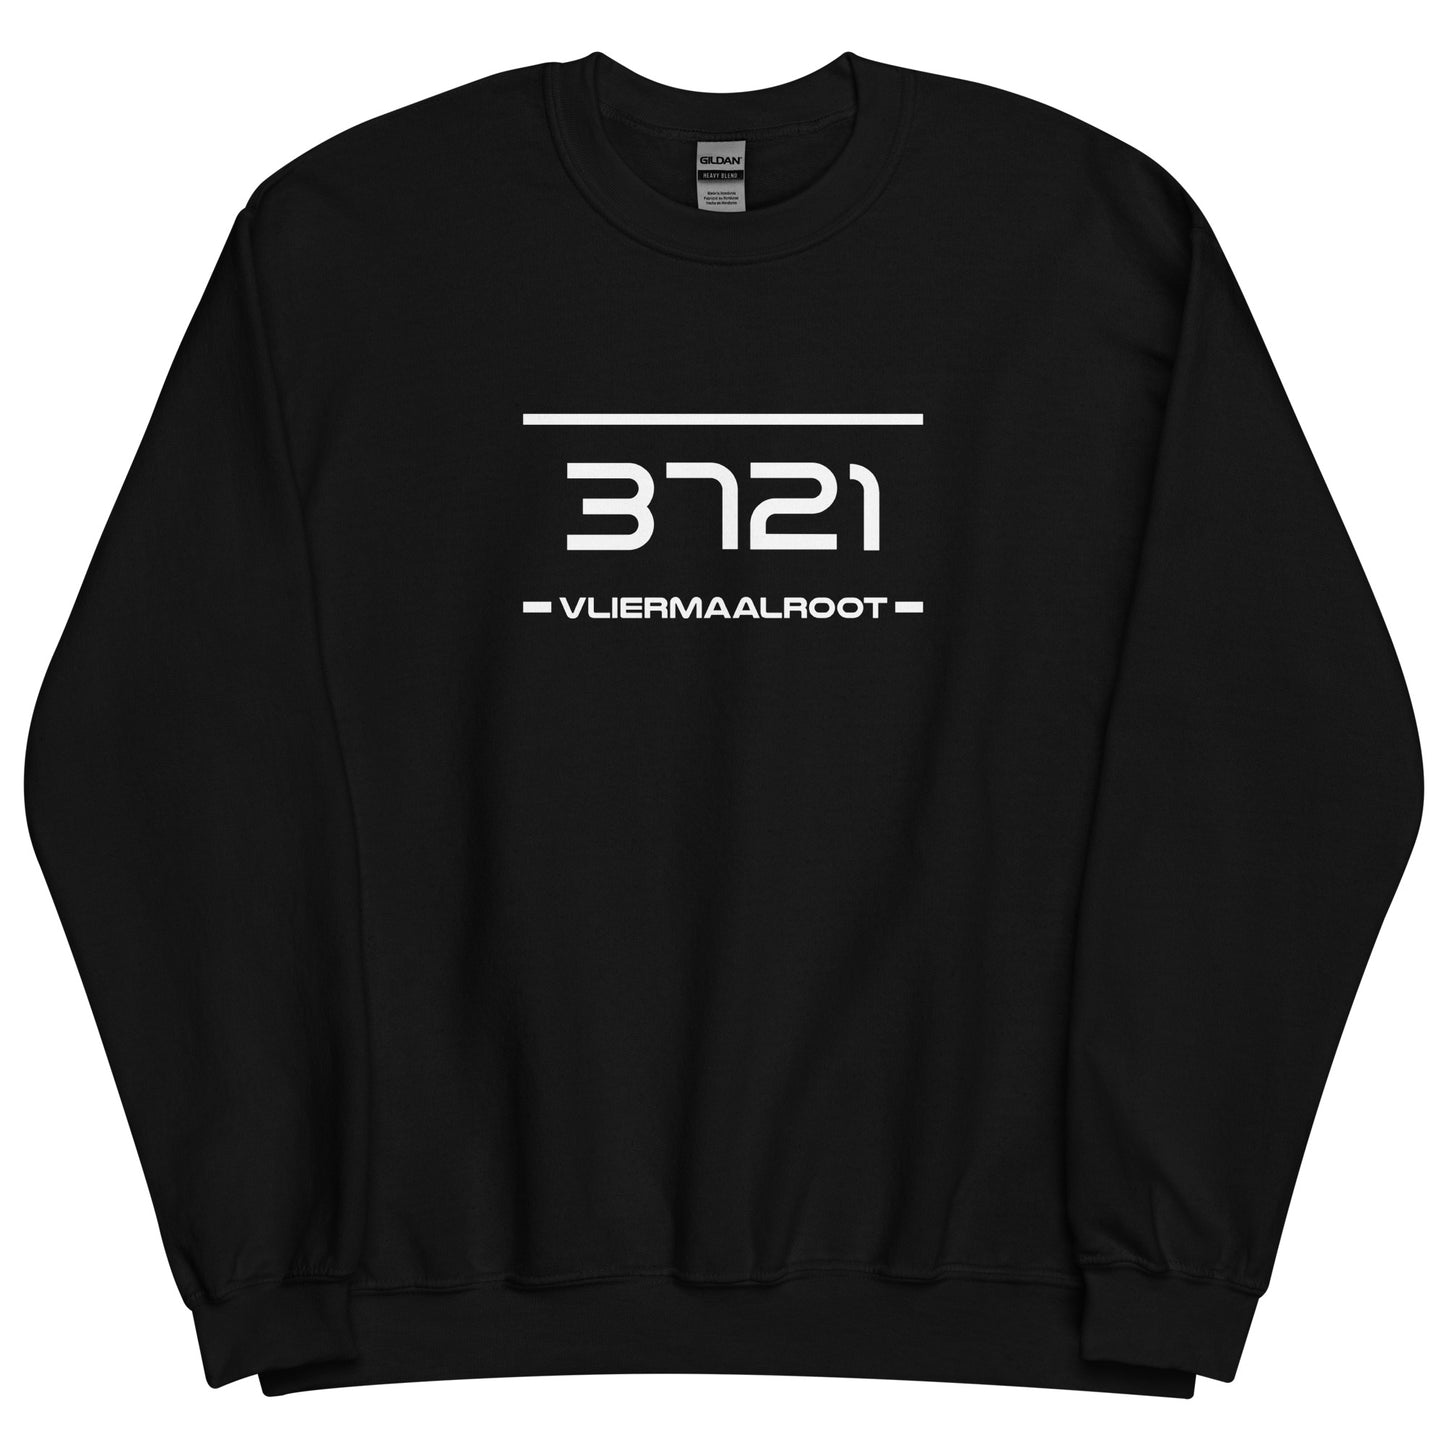 Sweater - 3721 - Vliermaalroot (M/V)